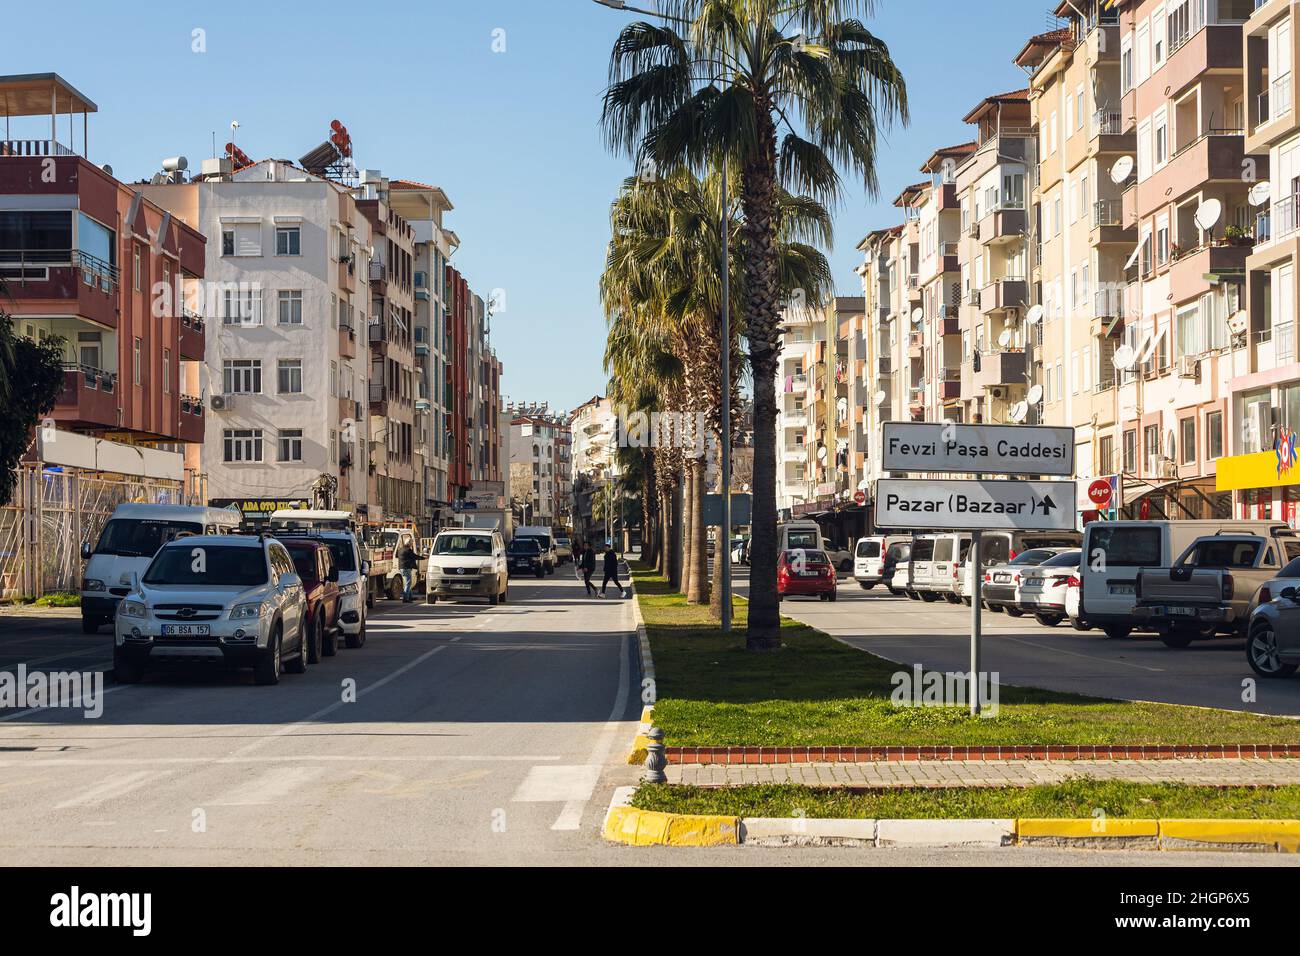 Manavgat, Turchia -20 gennaio 2022: Strada della città con diverse case basse, traffico auto attivo, negozi Foto Stock